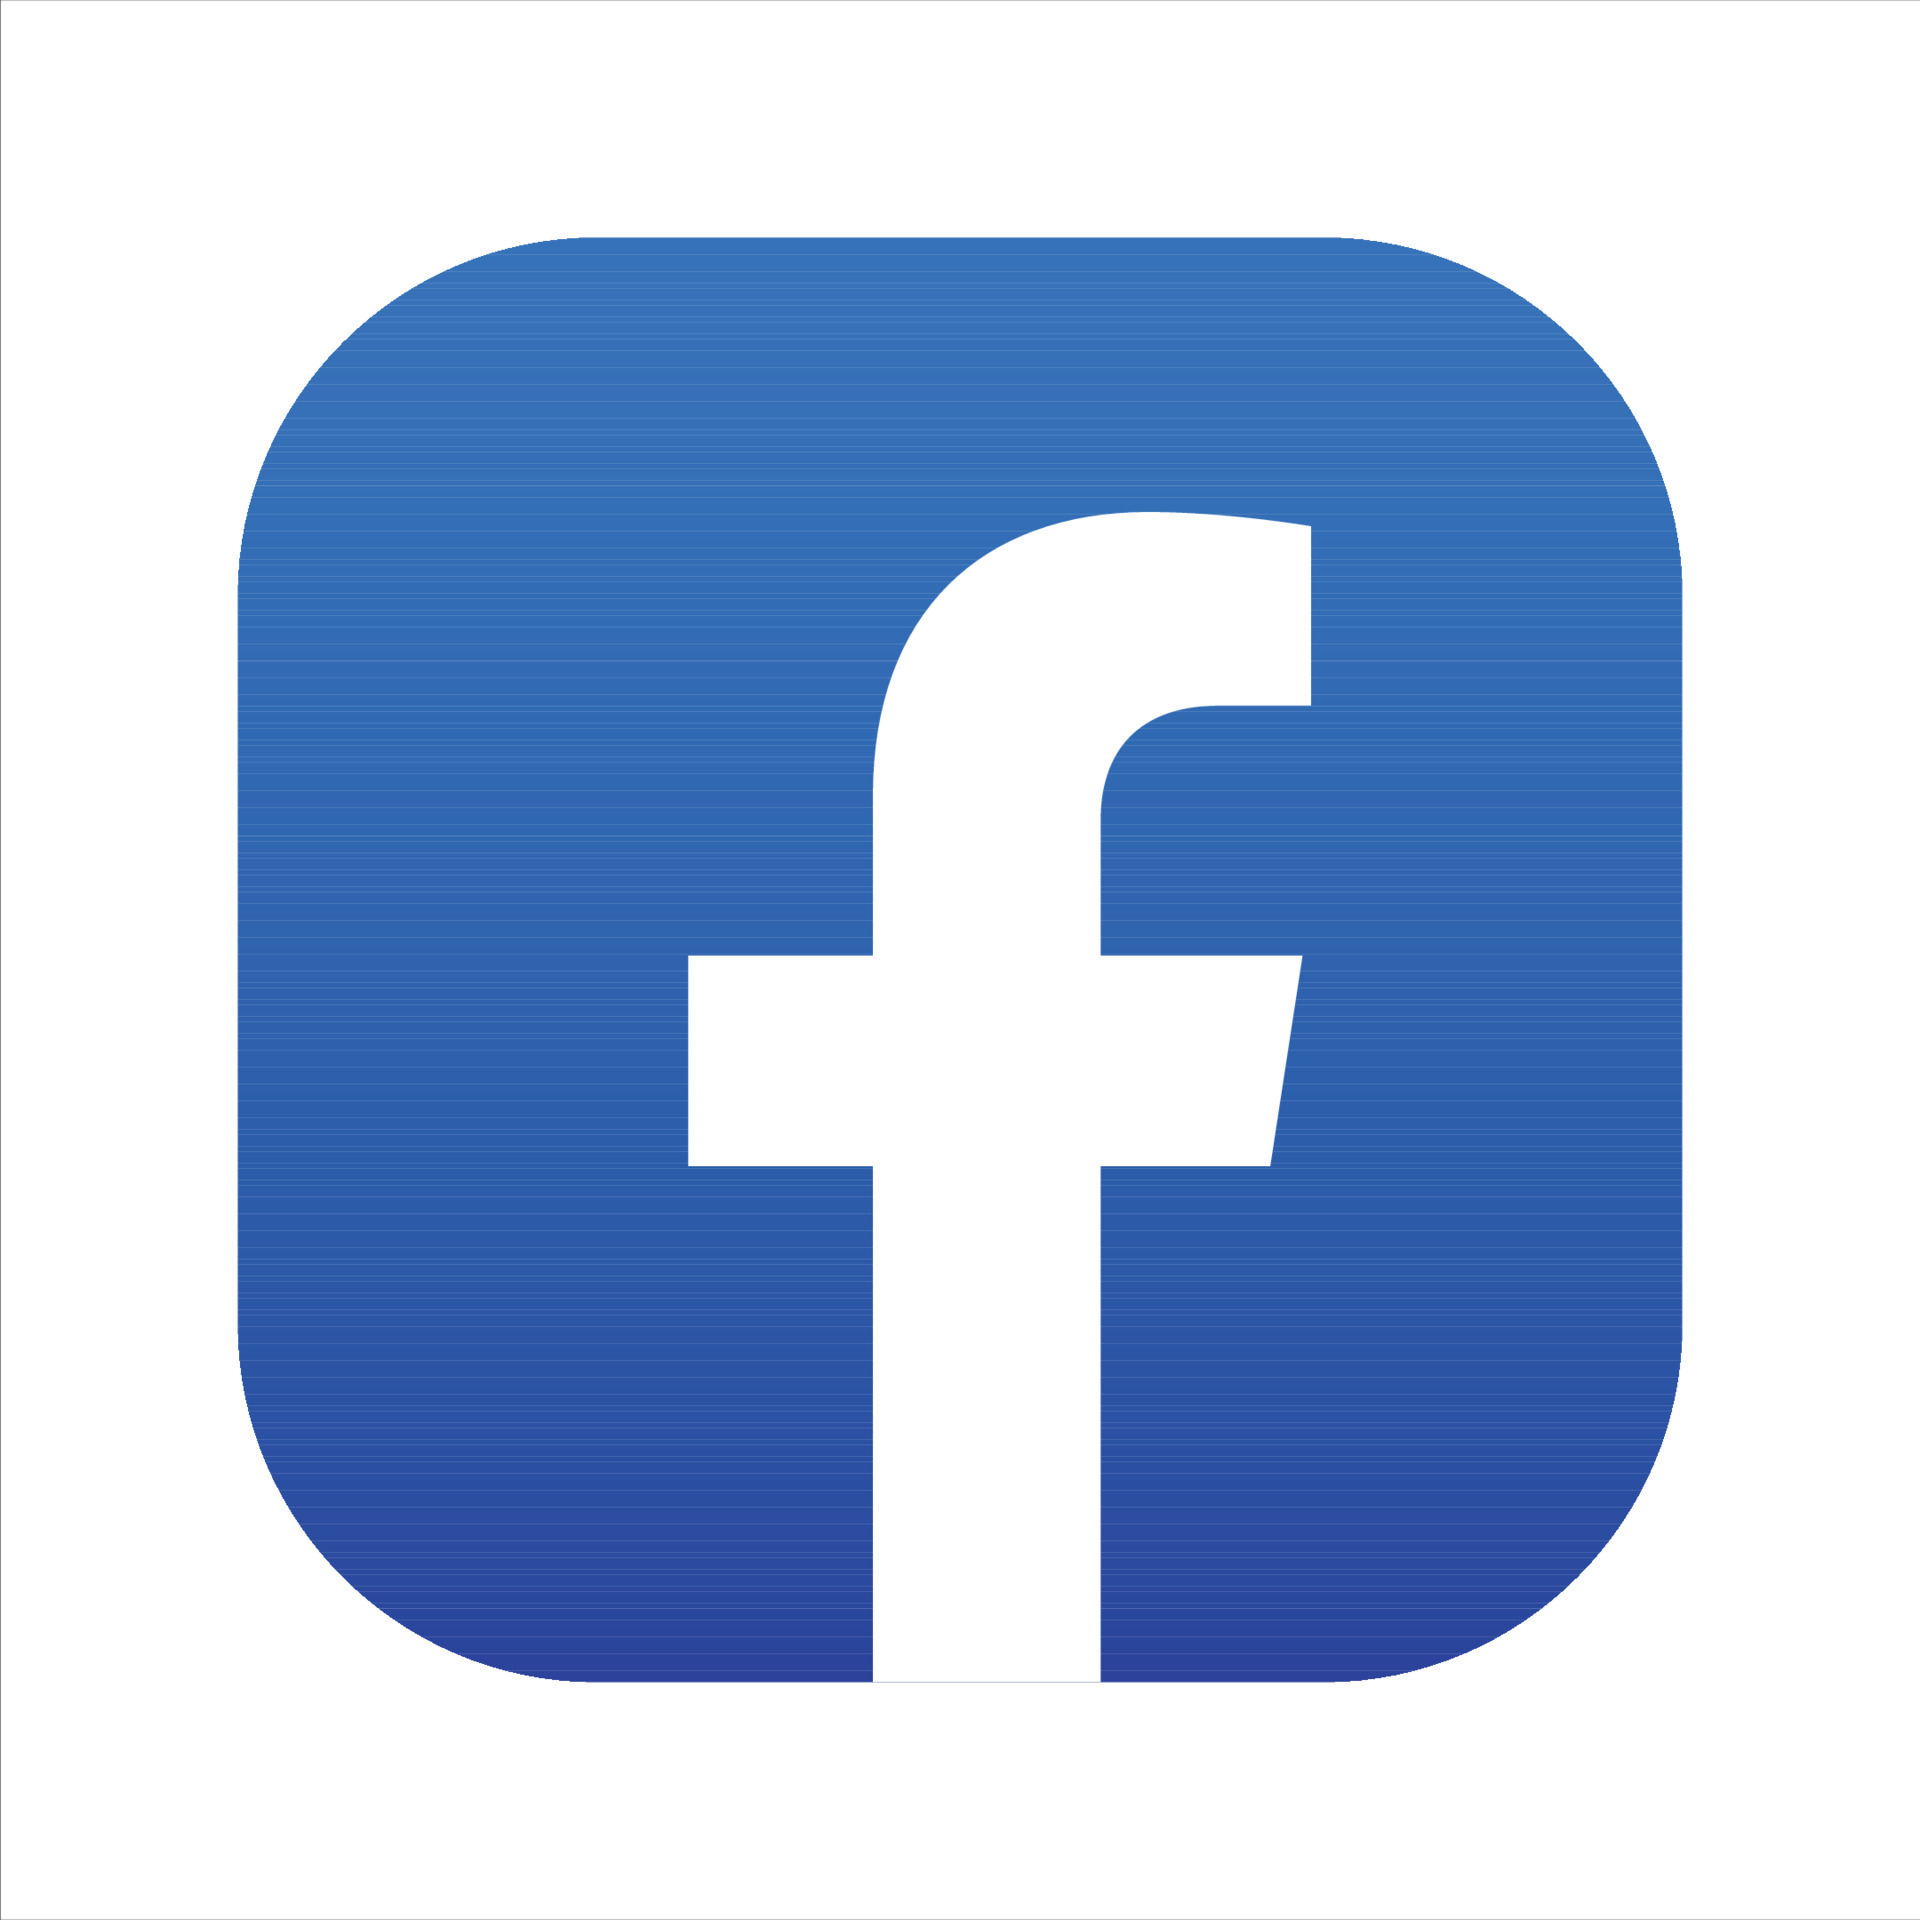 Facebook Icon, iOS Facebook Social Media Logo On White Background, Free  Vector 13901773 Vector Art at Vecteezy